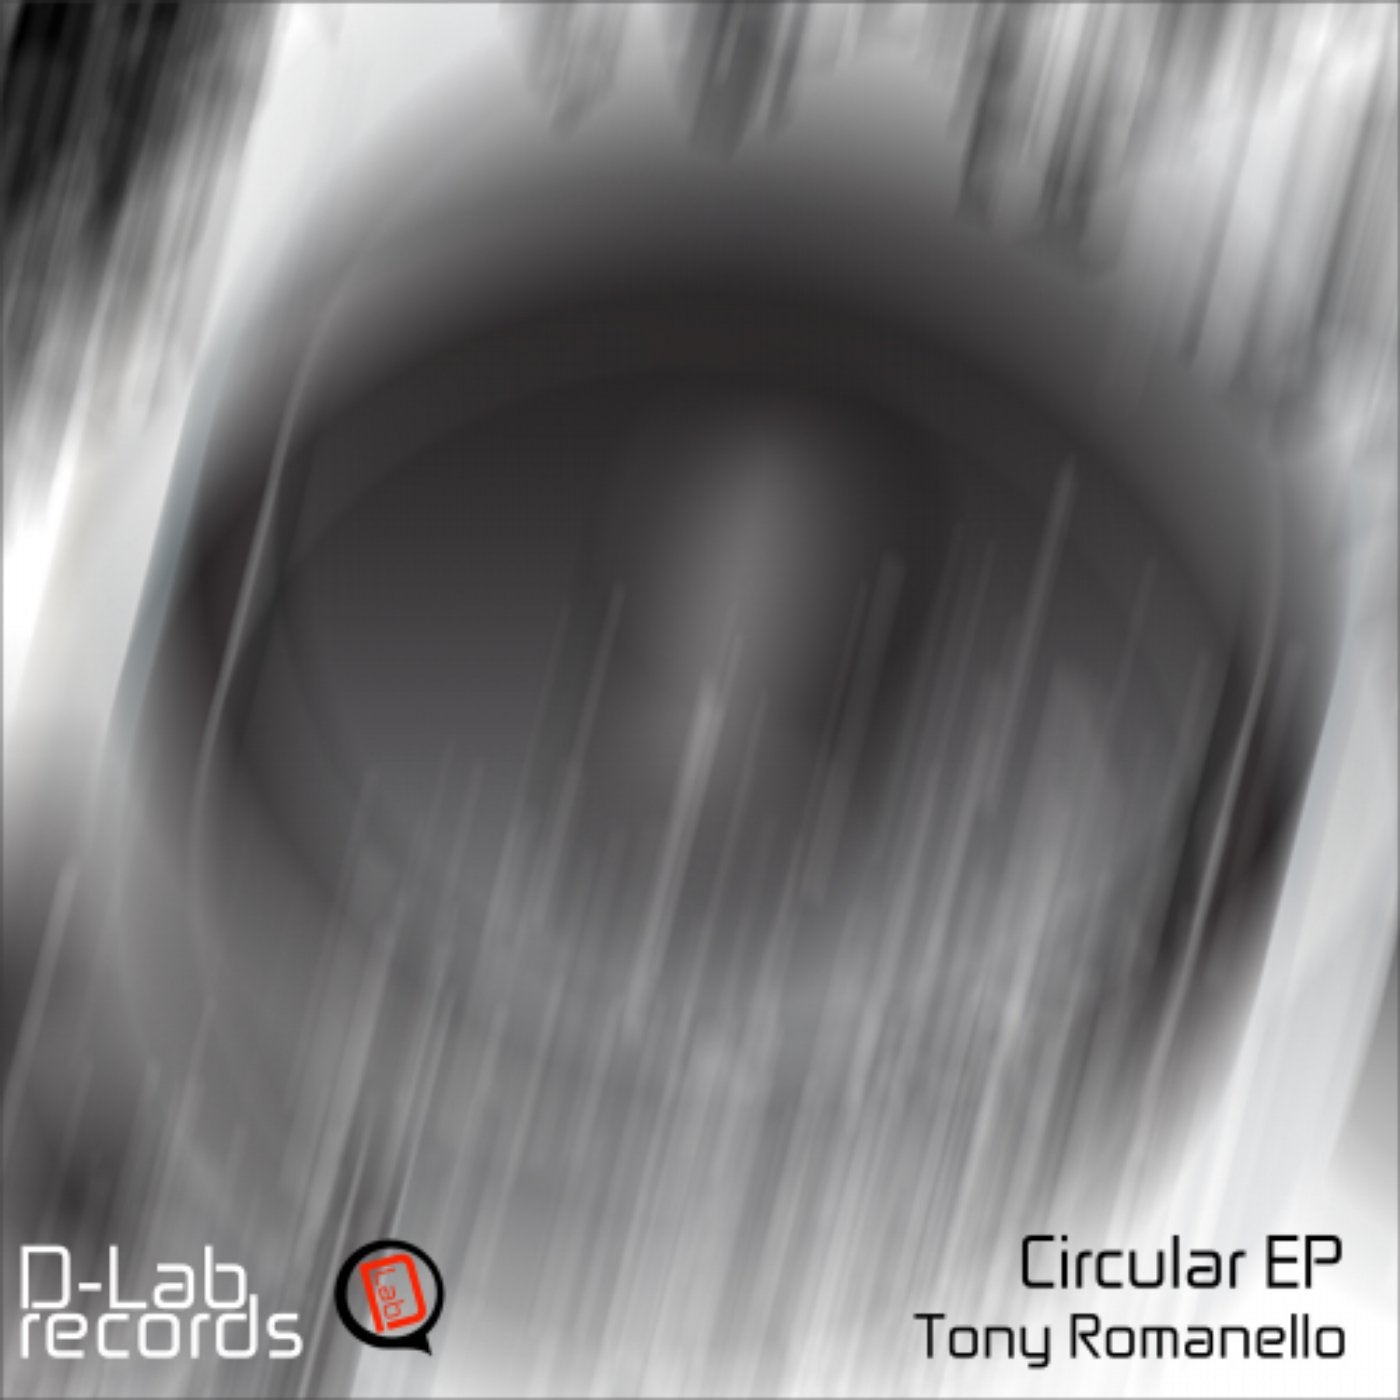 Circular EP